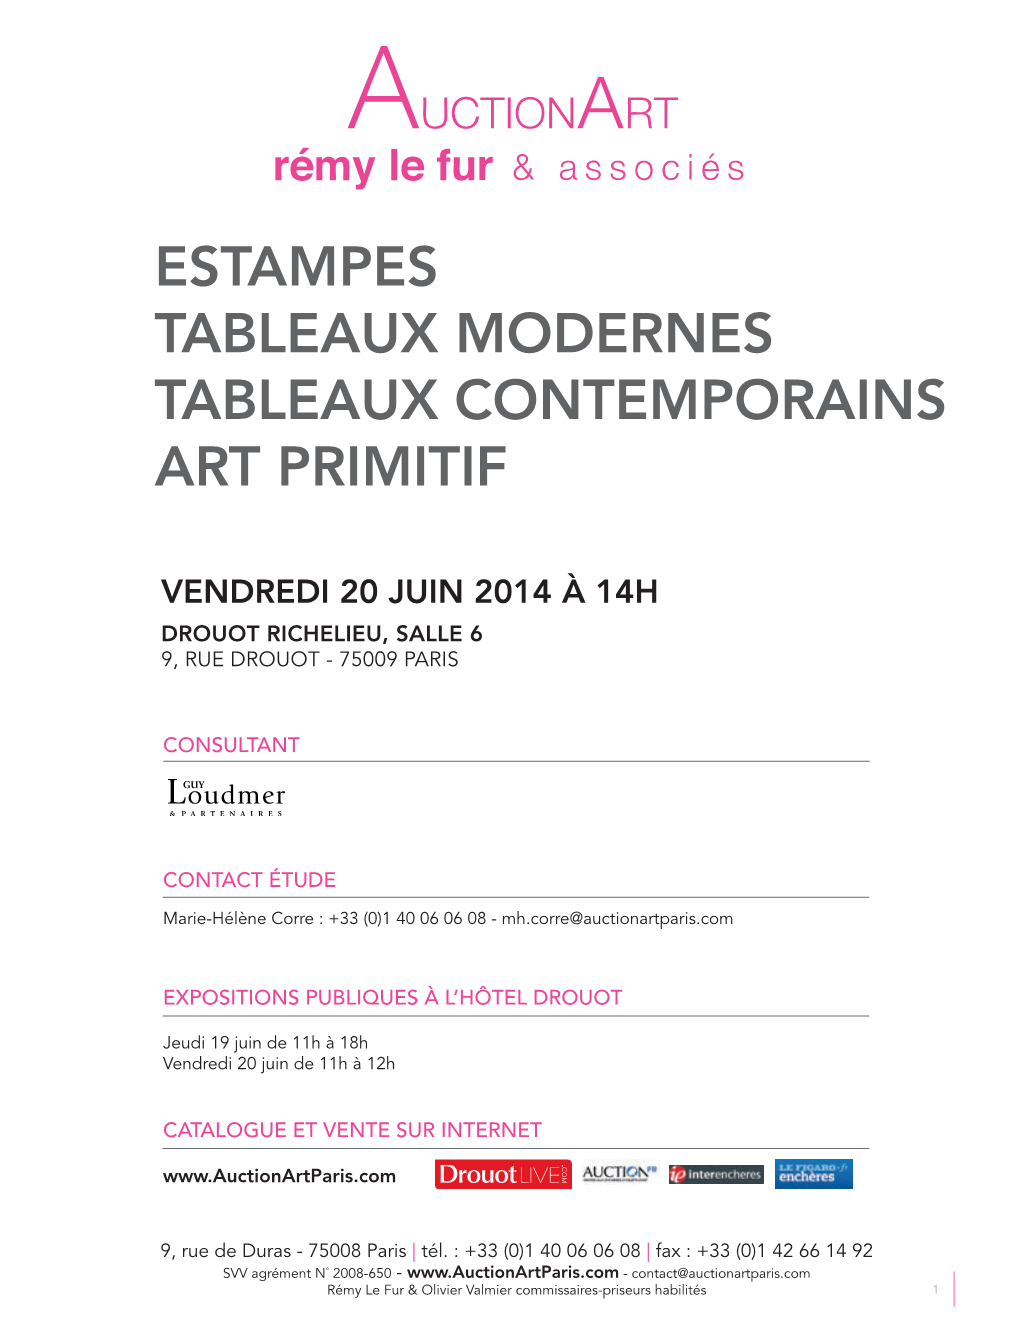 Estampes Tableaux Modernes Tableaux Contemporains Art Primitif